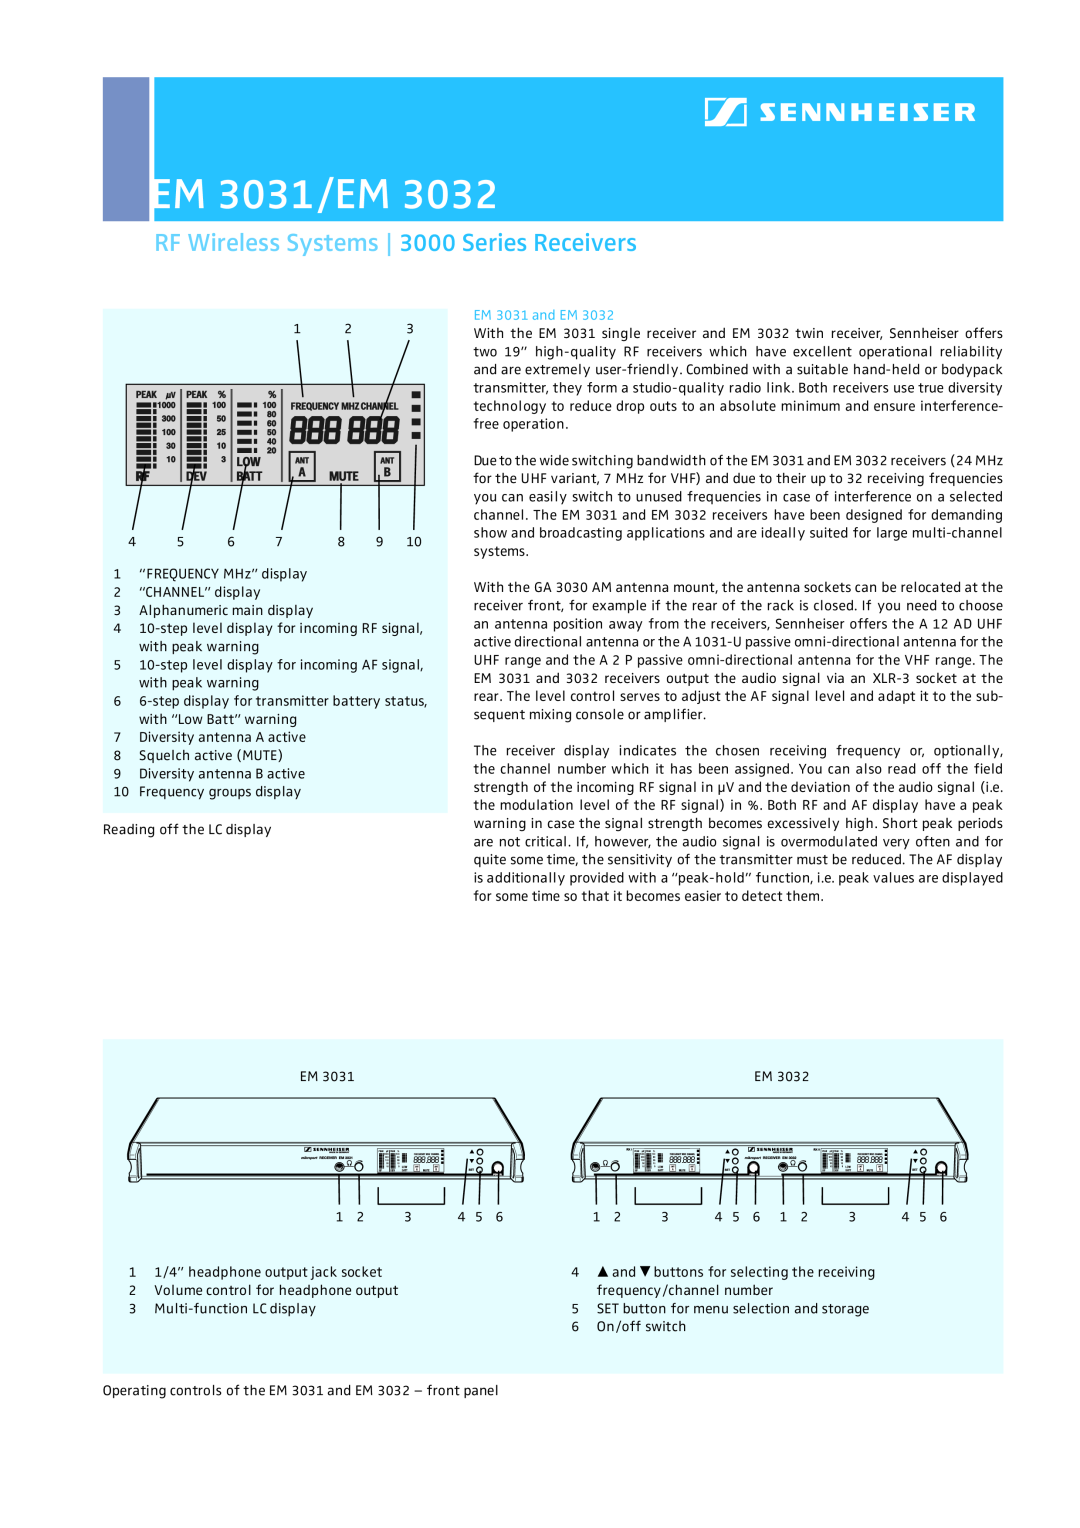 Sennheiser EM 3032-V, EM 3032-U dimensions EM 3031 and EM, EM 3031/EM, RF Wireless Systems 3000 Series Receivers 